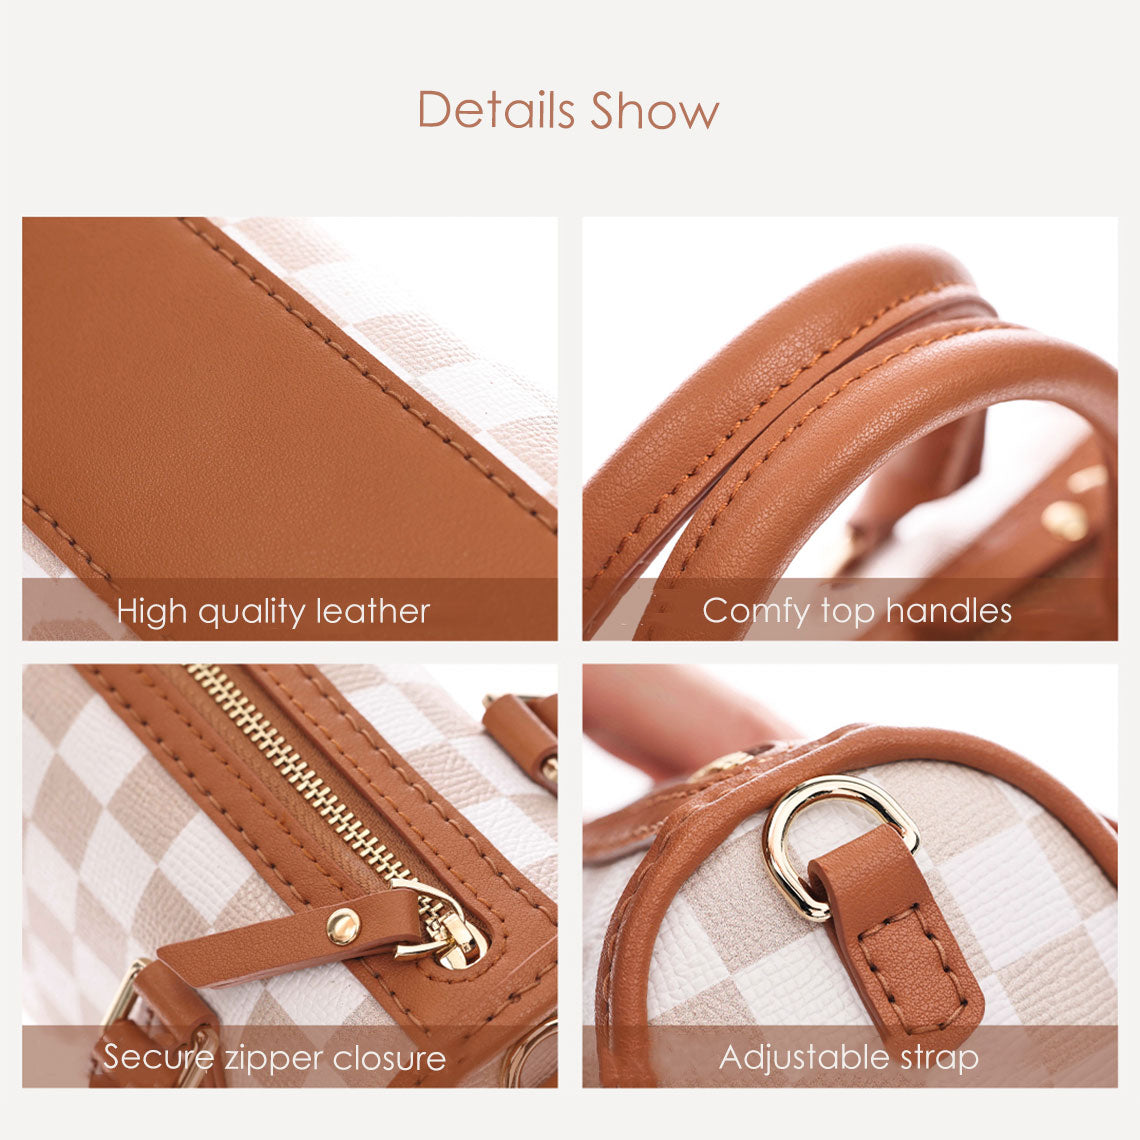 Vintage Check Handbag Details | Brown Leather Handbag